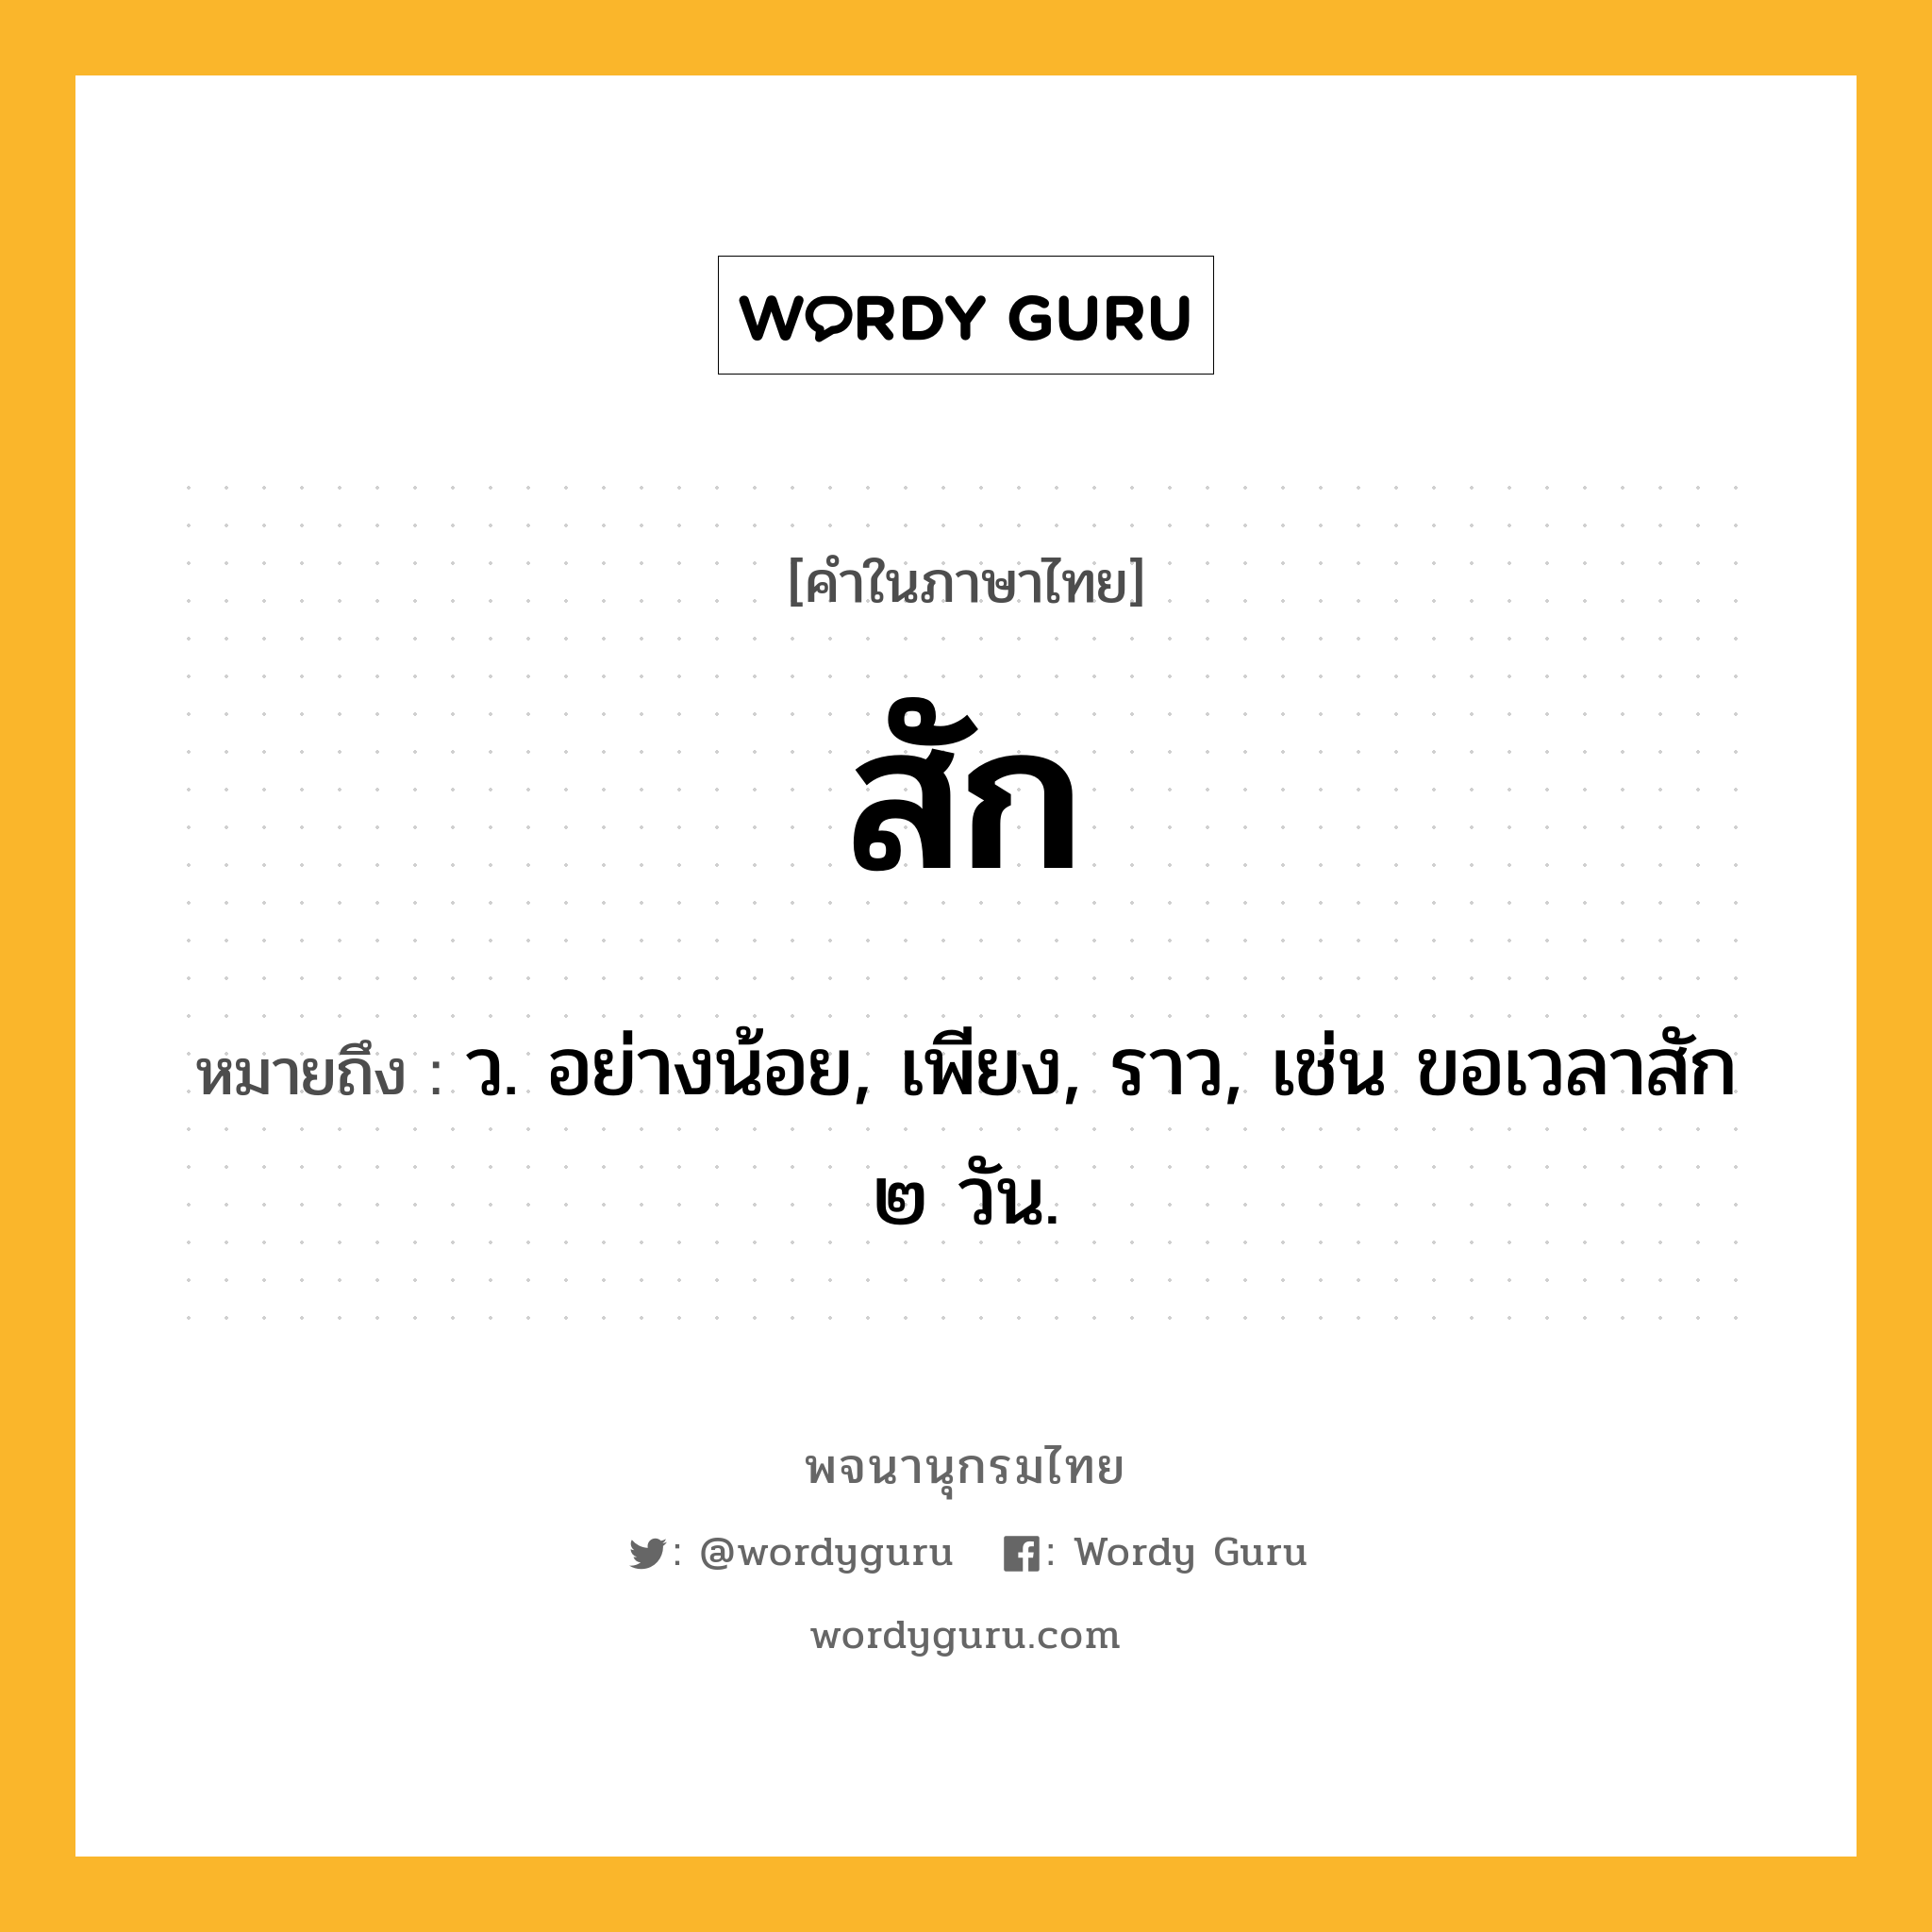 สัก ความหมาย หมายถึงอะไร?, คำในภาษาไทย สัก หมายถึง ว. อย่างน้อย, เพียง, ราว, เช่น ขอเวลาสัก ๒ วัน.